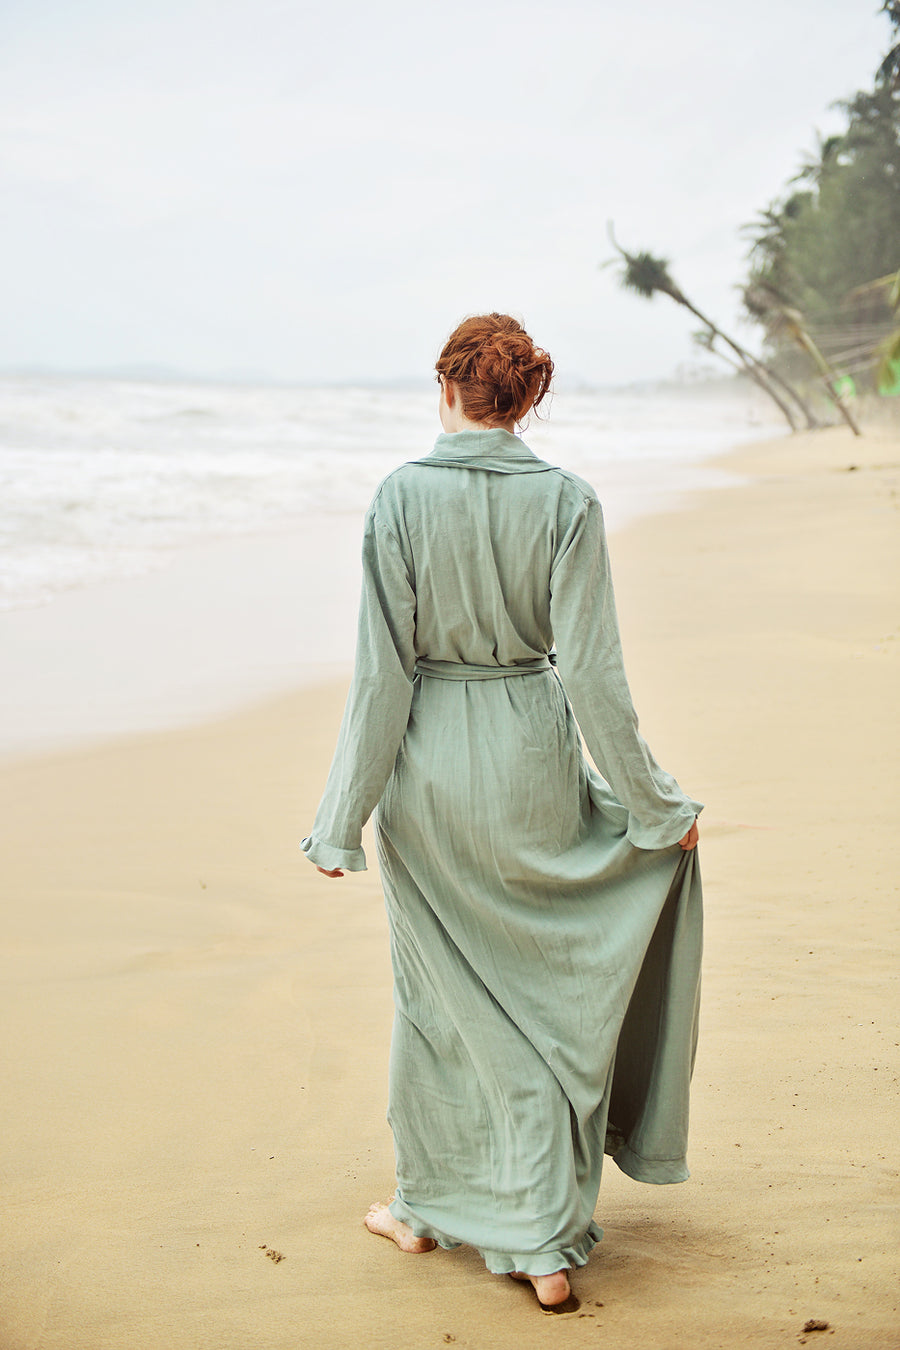 Robes for Women Linen - Robe Kimono Linen - Women Long Robe - Long Sleeve Robe